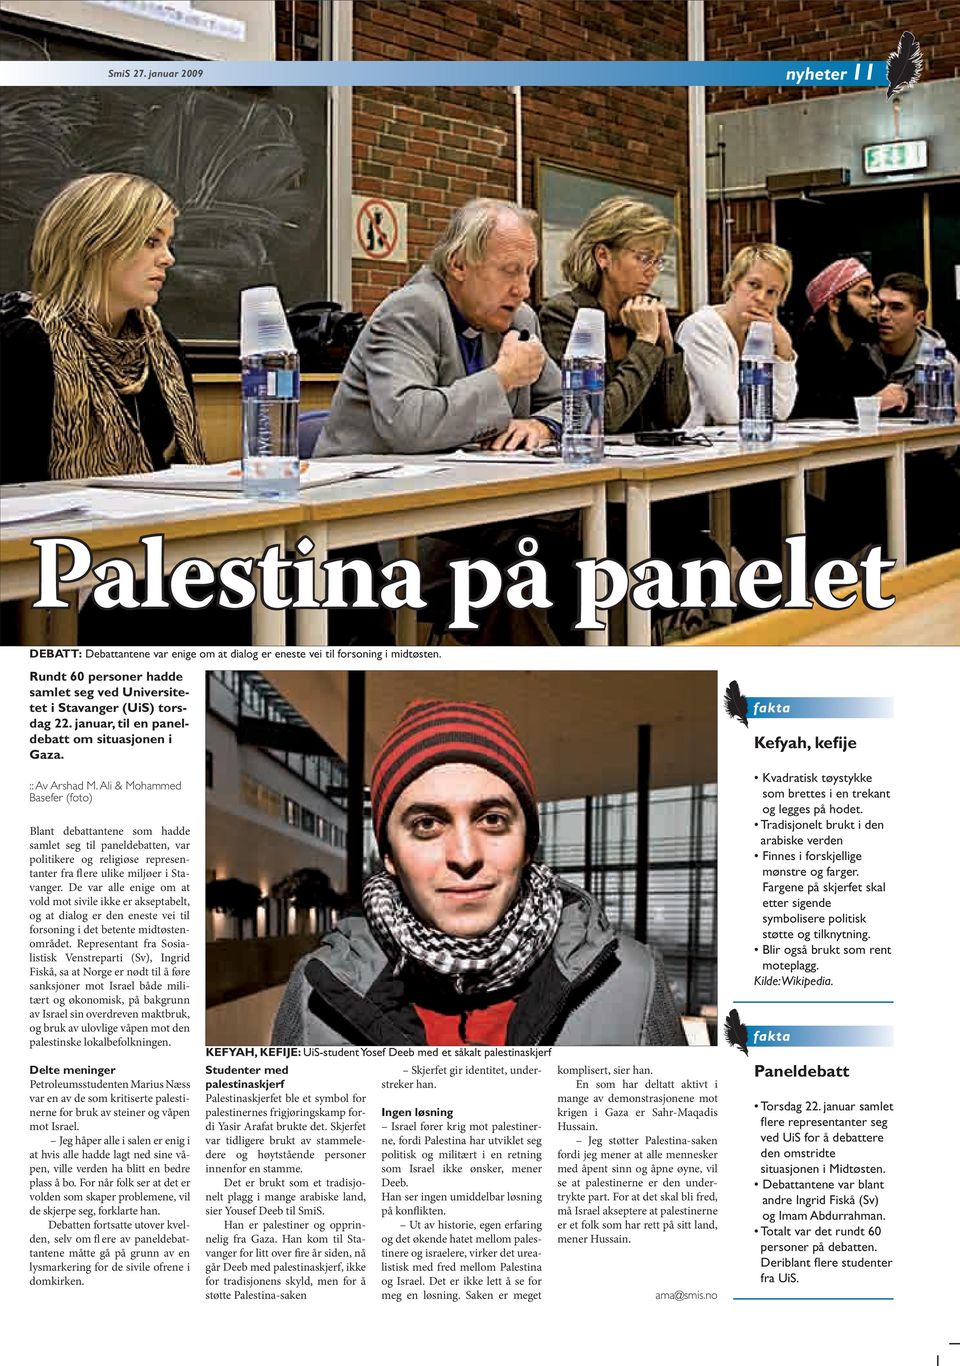 Ali & Mohammed Basefer (foto) Blant debattantene som hadde samlet seg til paneldebatten, var politikere og religiøse representanter fra fl ere ulike miljøer i Stavanger.